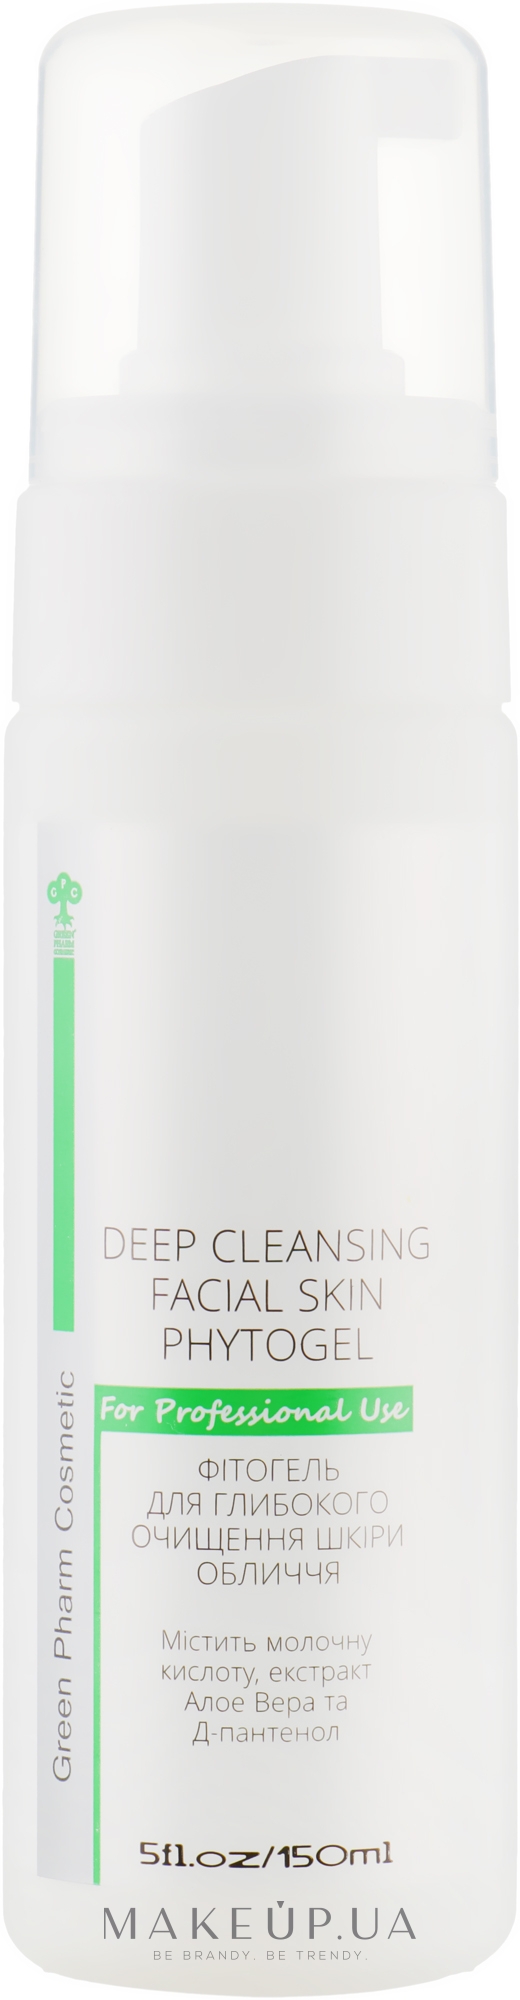 Фітогель для глибокого очищення шкіри обличчя - Green Pharm Cosmetic РН 5,0 — фото 150ml